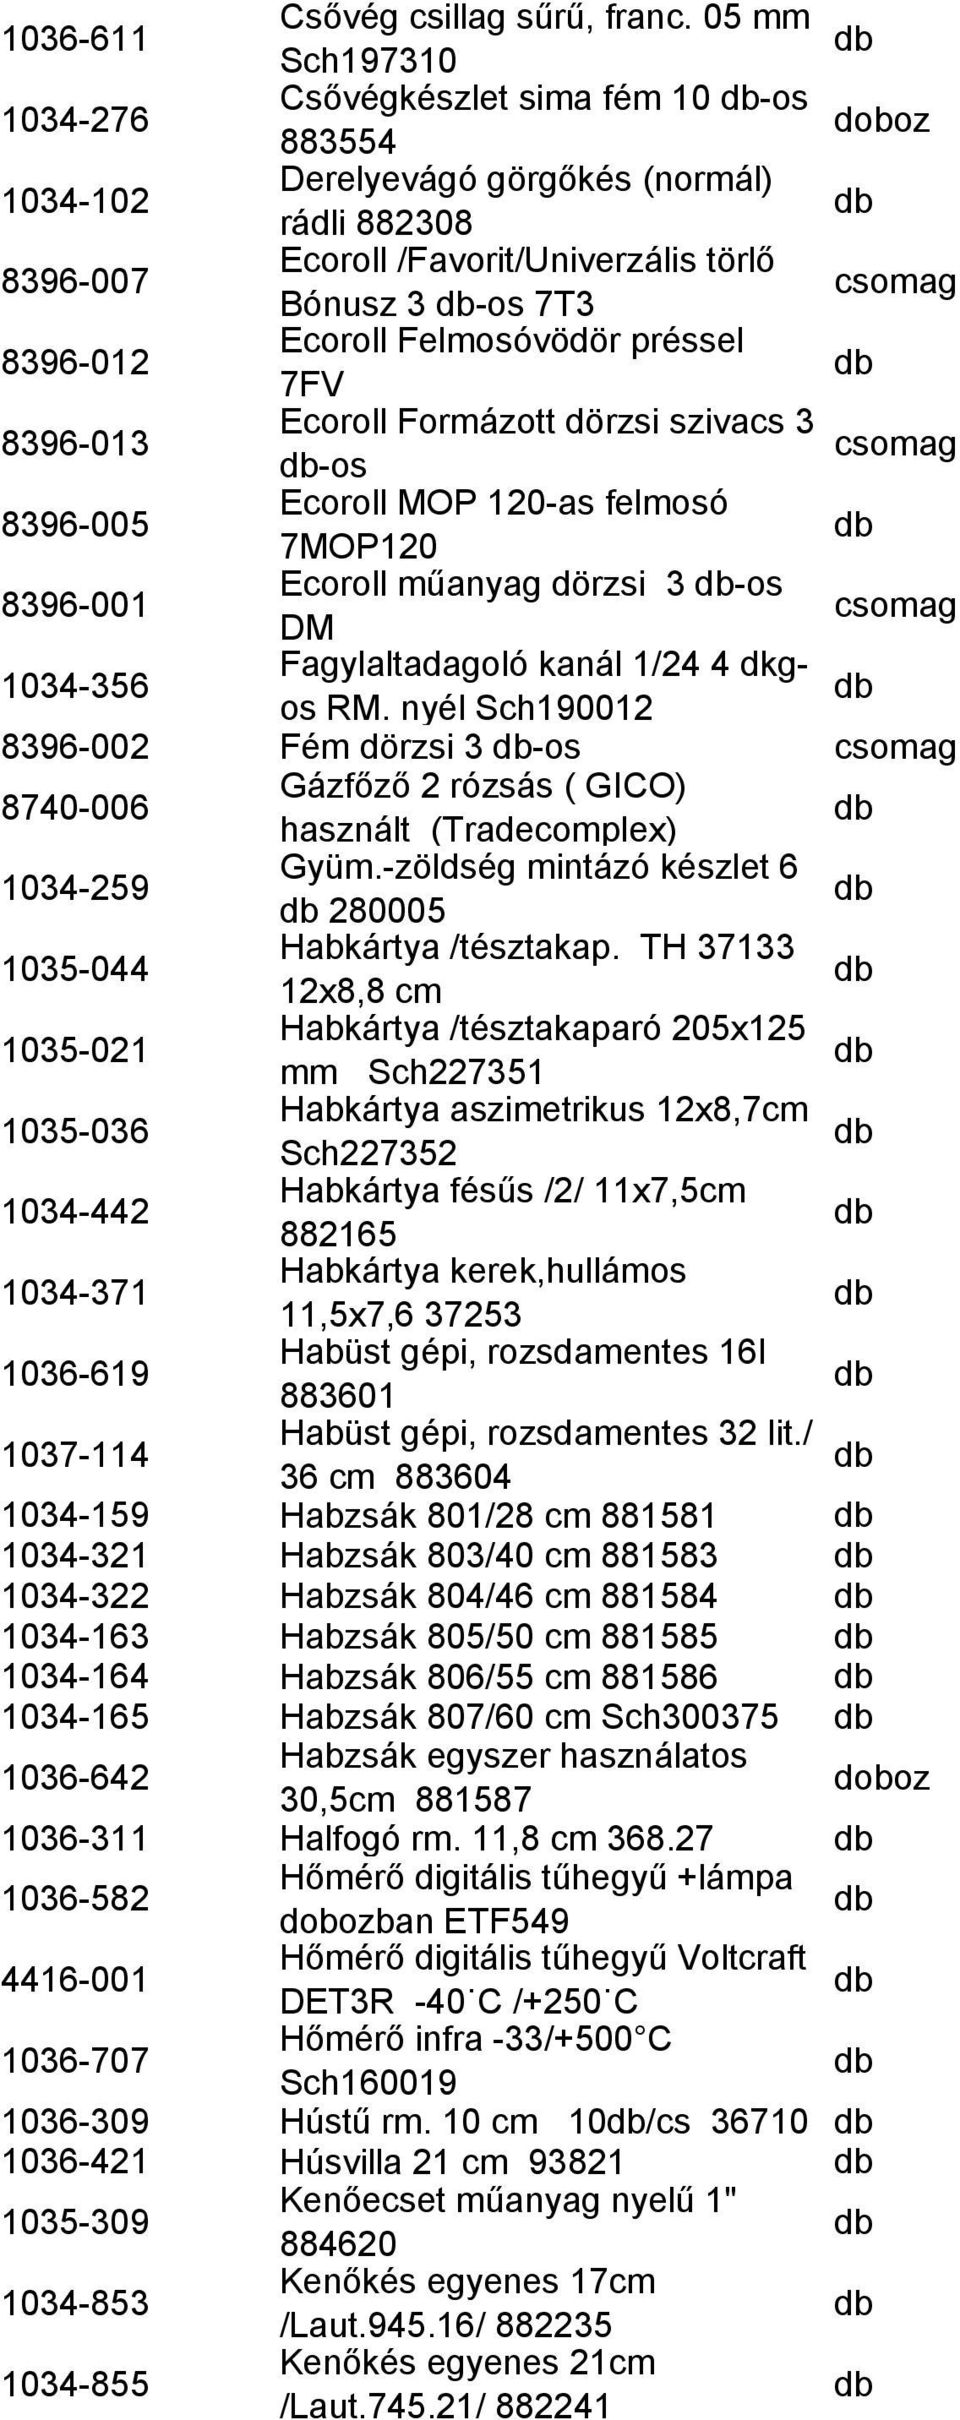 préssel 7FV 8396-013 Ecoroll Formázott dörzsi szivacs 3 -os 8396-005 Ecoroll MOP 120-as felmosó 7MOP120 8396-001 Ecoroll műanyag dörzsi 3 -os DM 1034-356 Fagylaltadagoló kanál 1/24 4 dos RM.